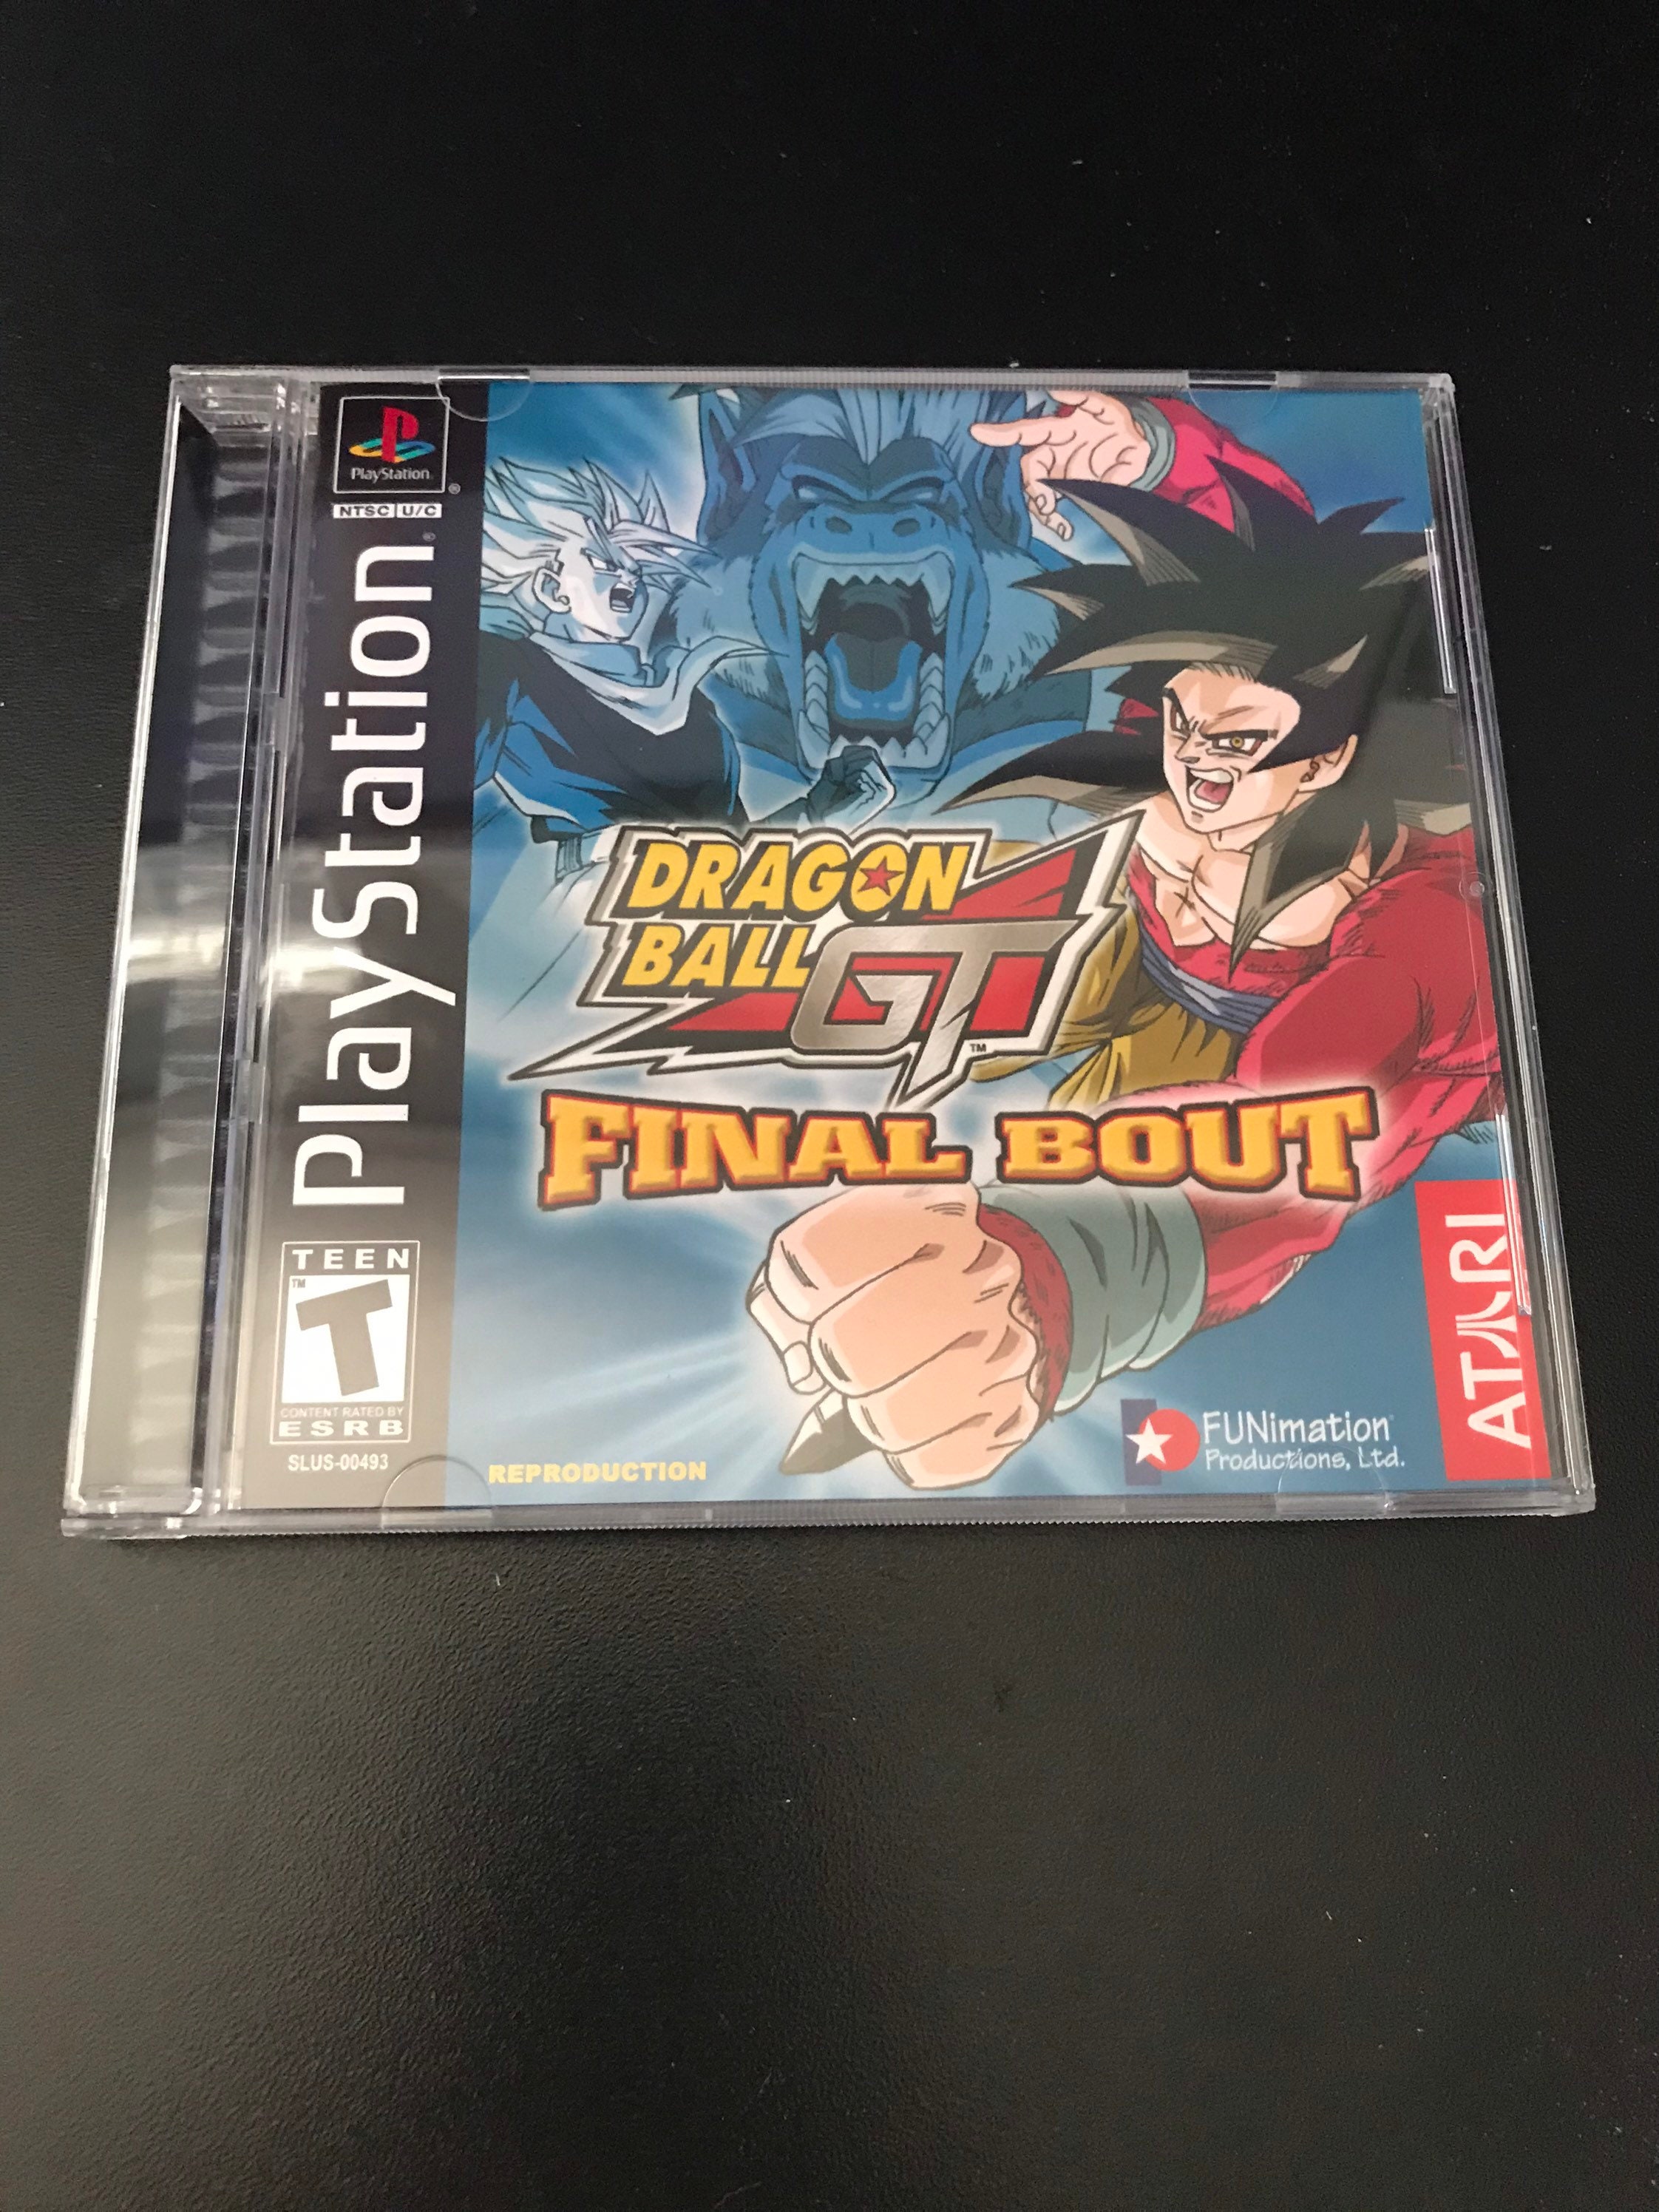  ATARI Dragonball GT: Final Bout ( Playstation ) : Video Games